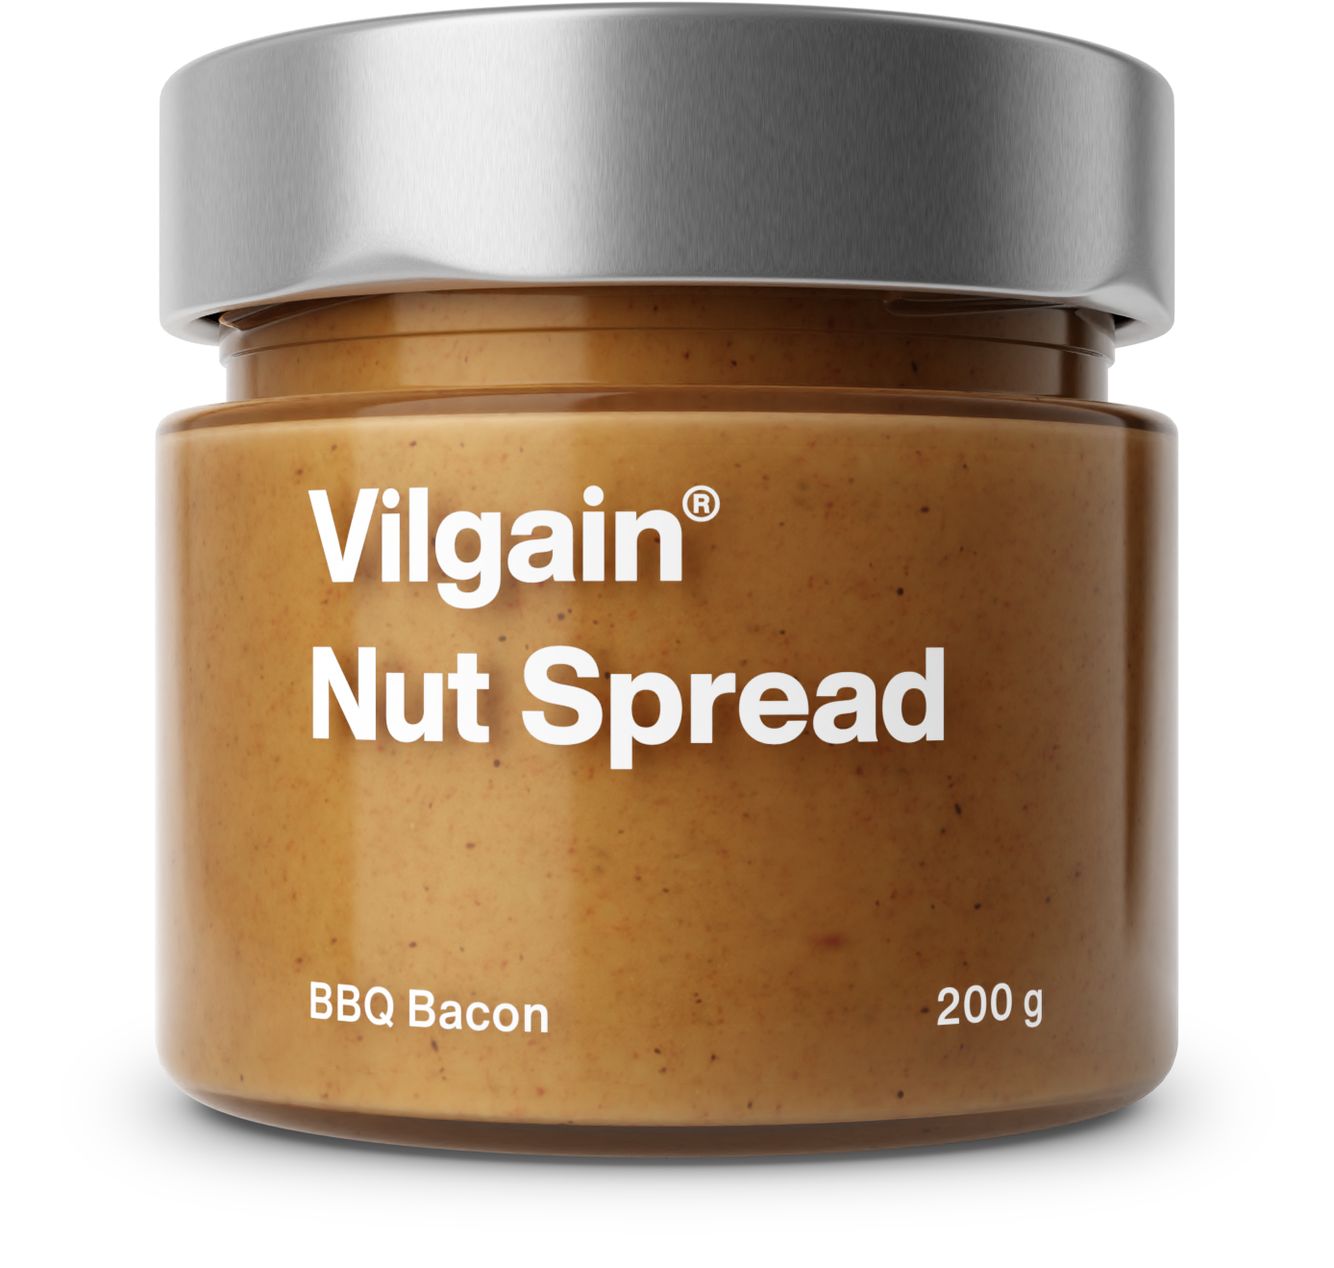 Vilgain Nut Spread